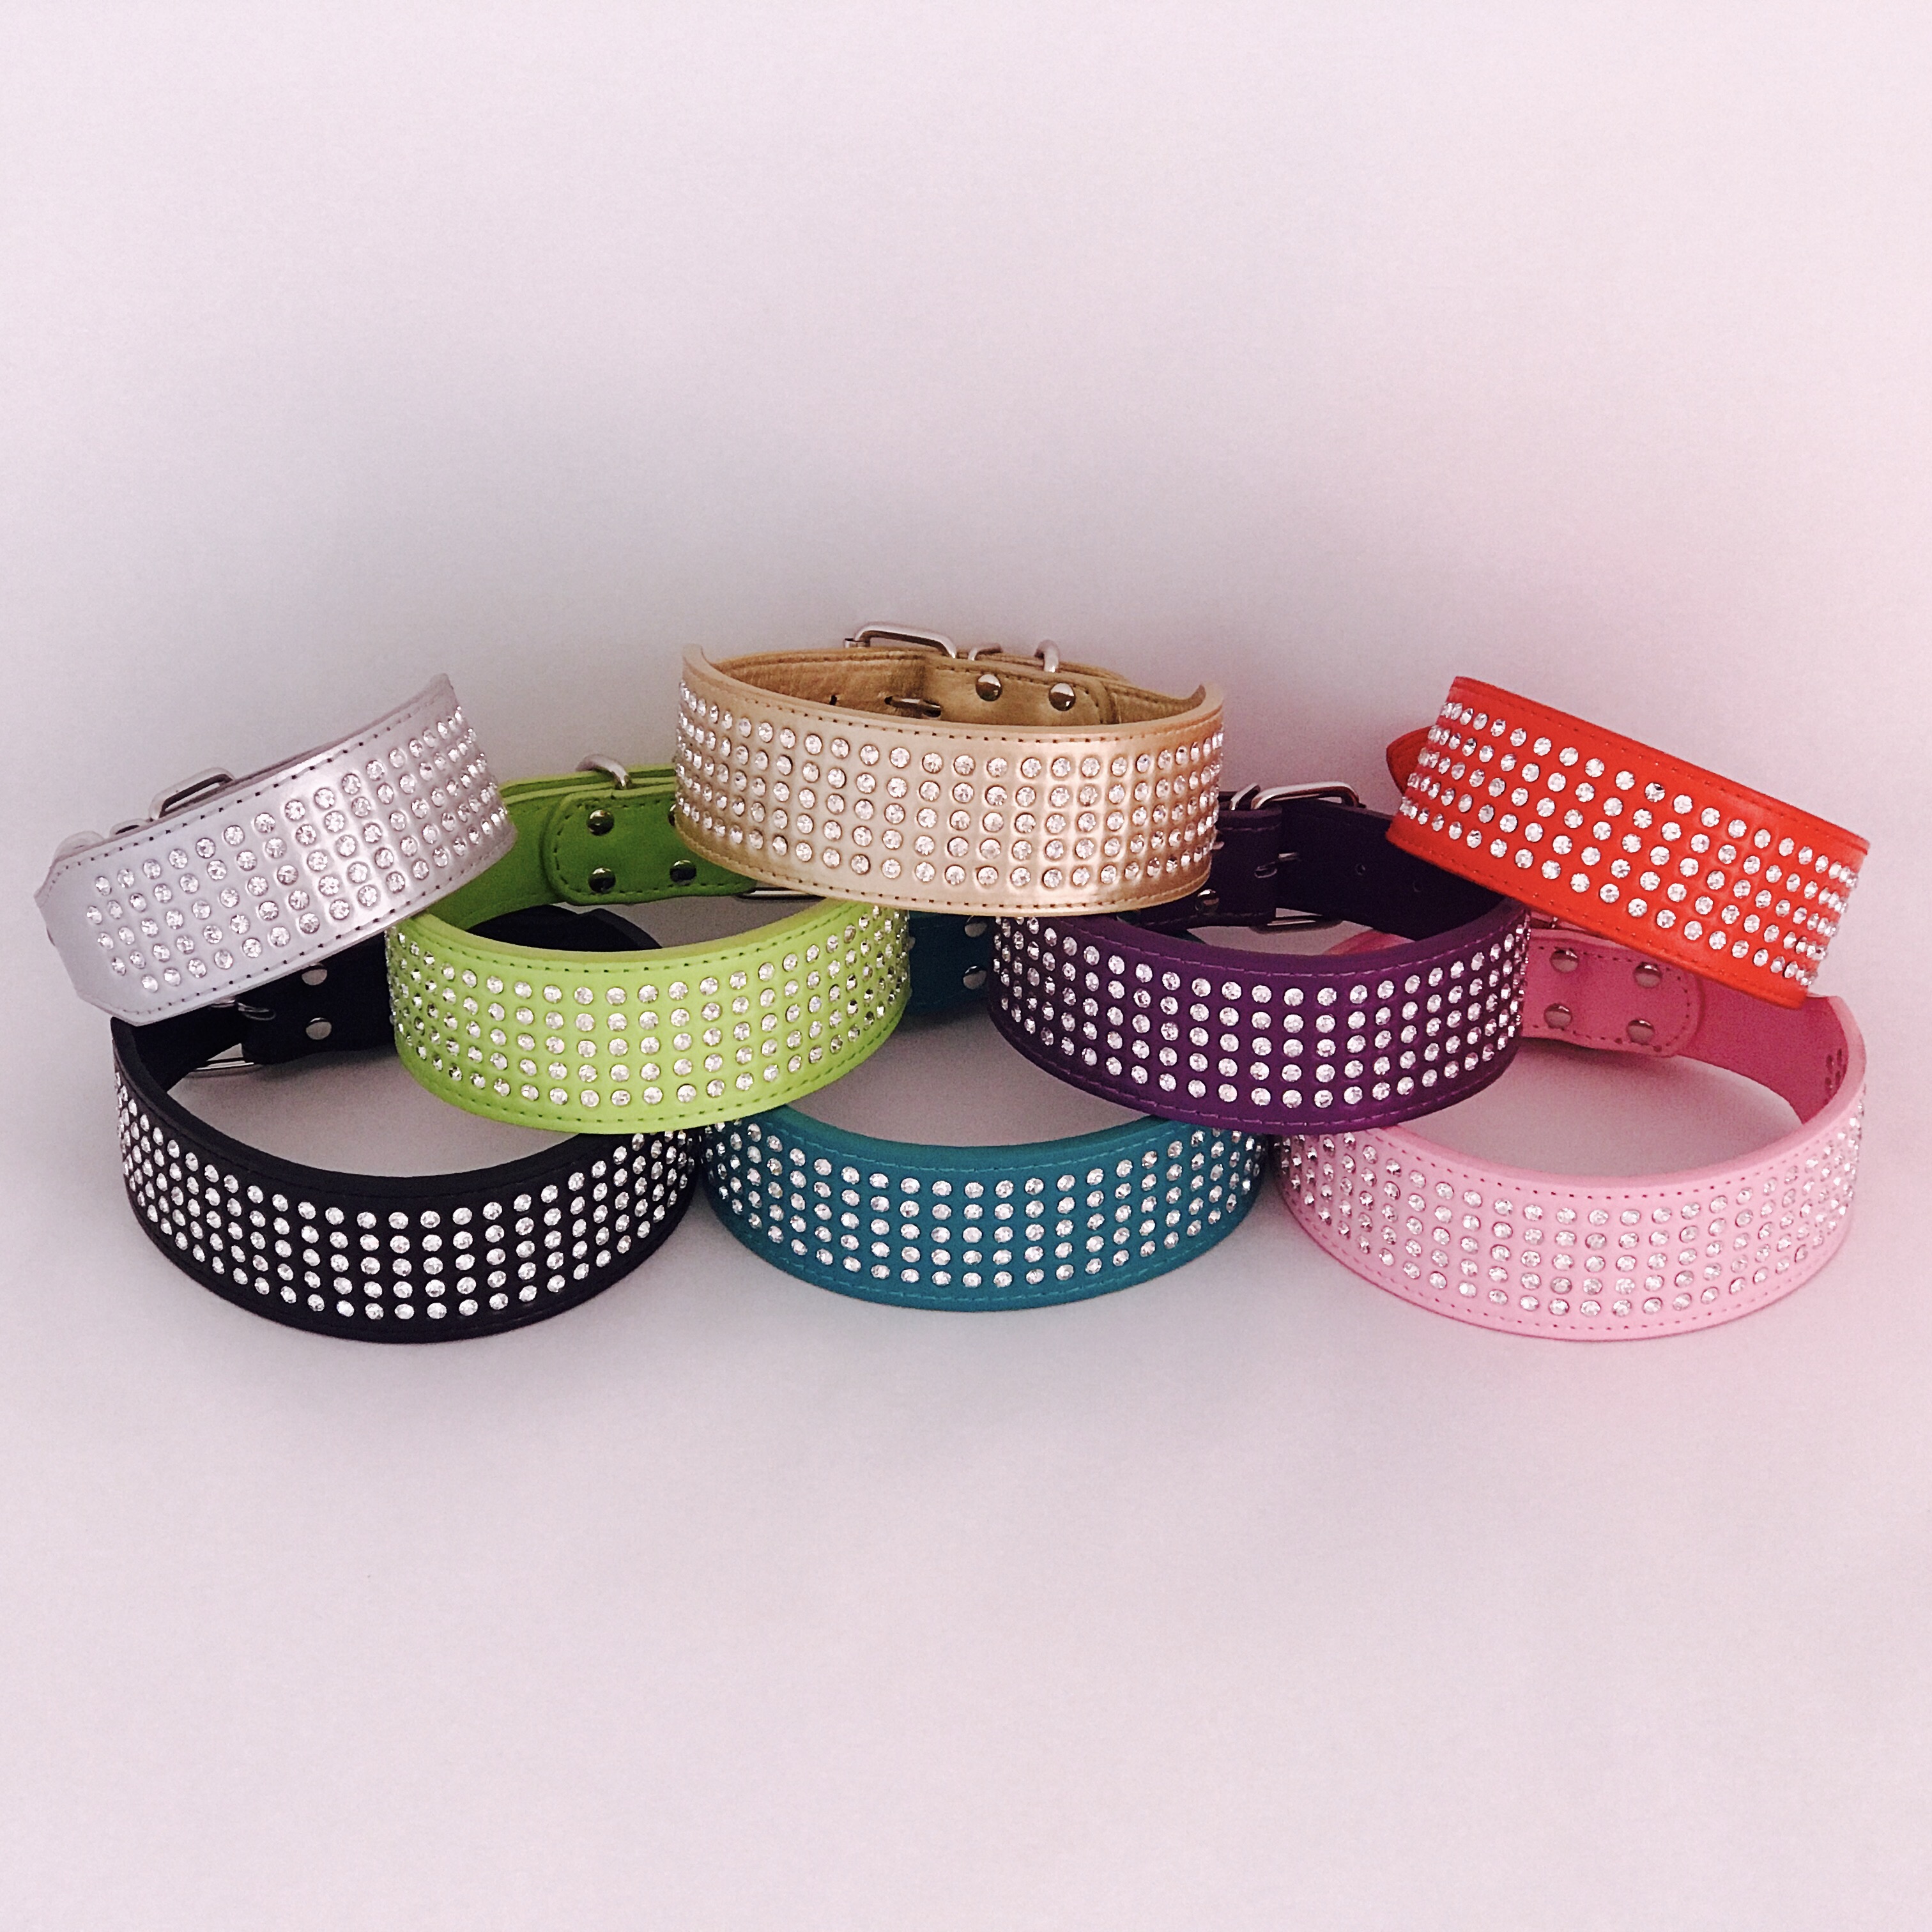 Hundehalsband (Kunstleder) mit BlingBling in violett (8 Farben und 4 Grössen erhältlich)